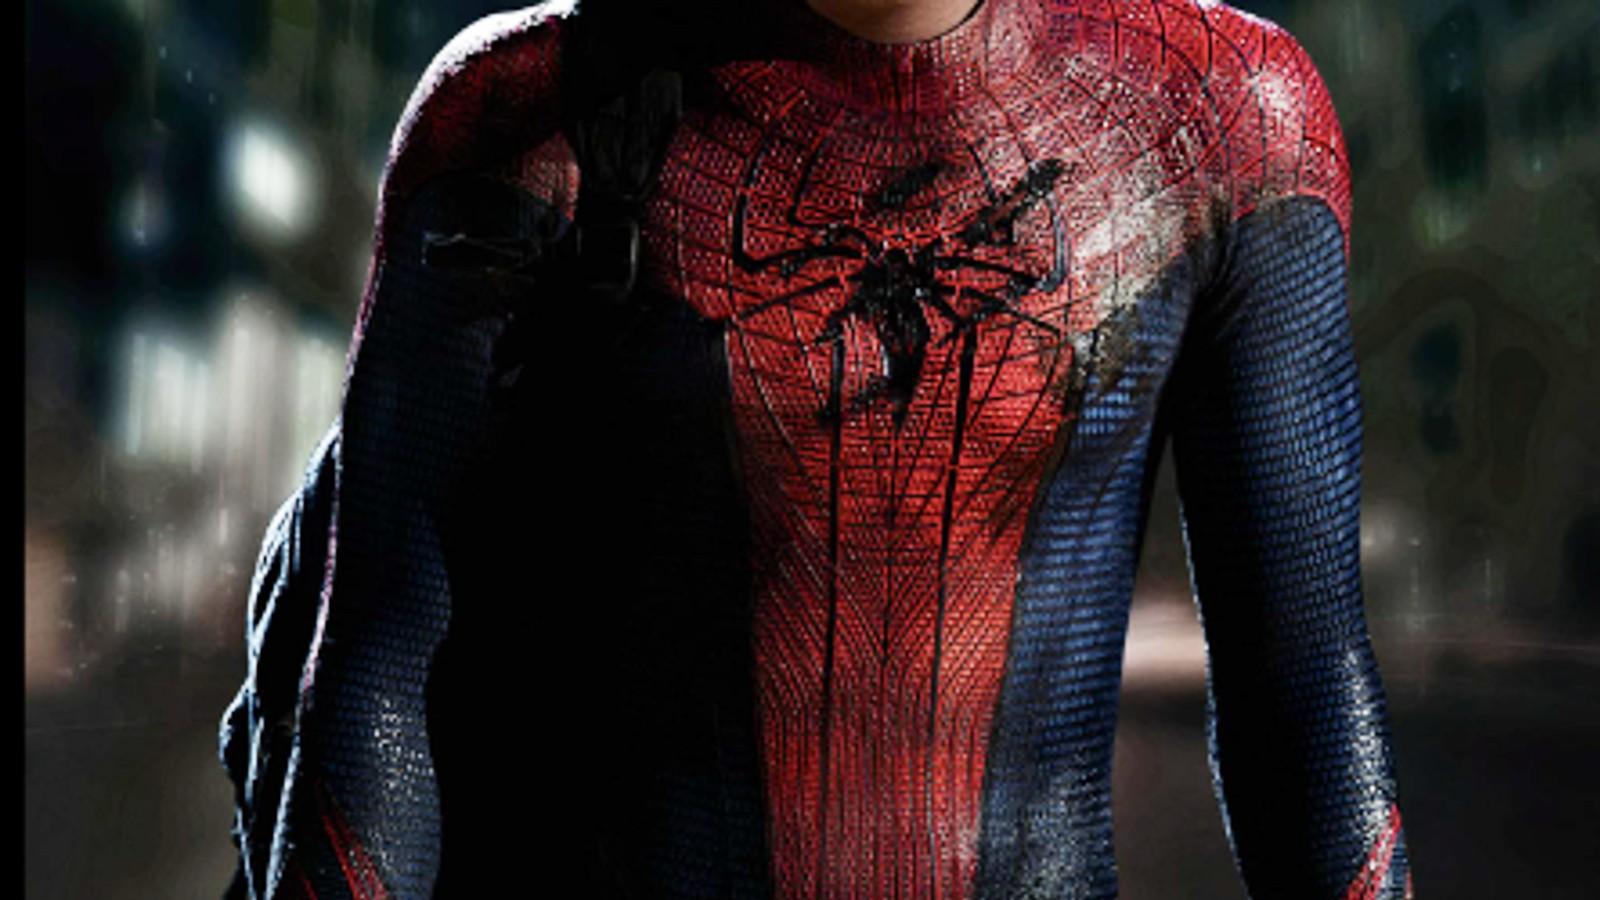 Andrew Garfield in Spider-Man suit